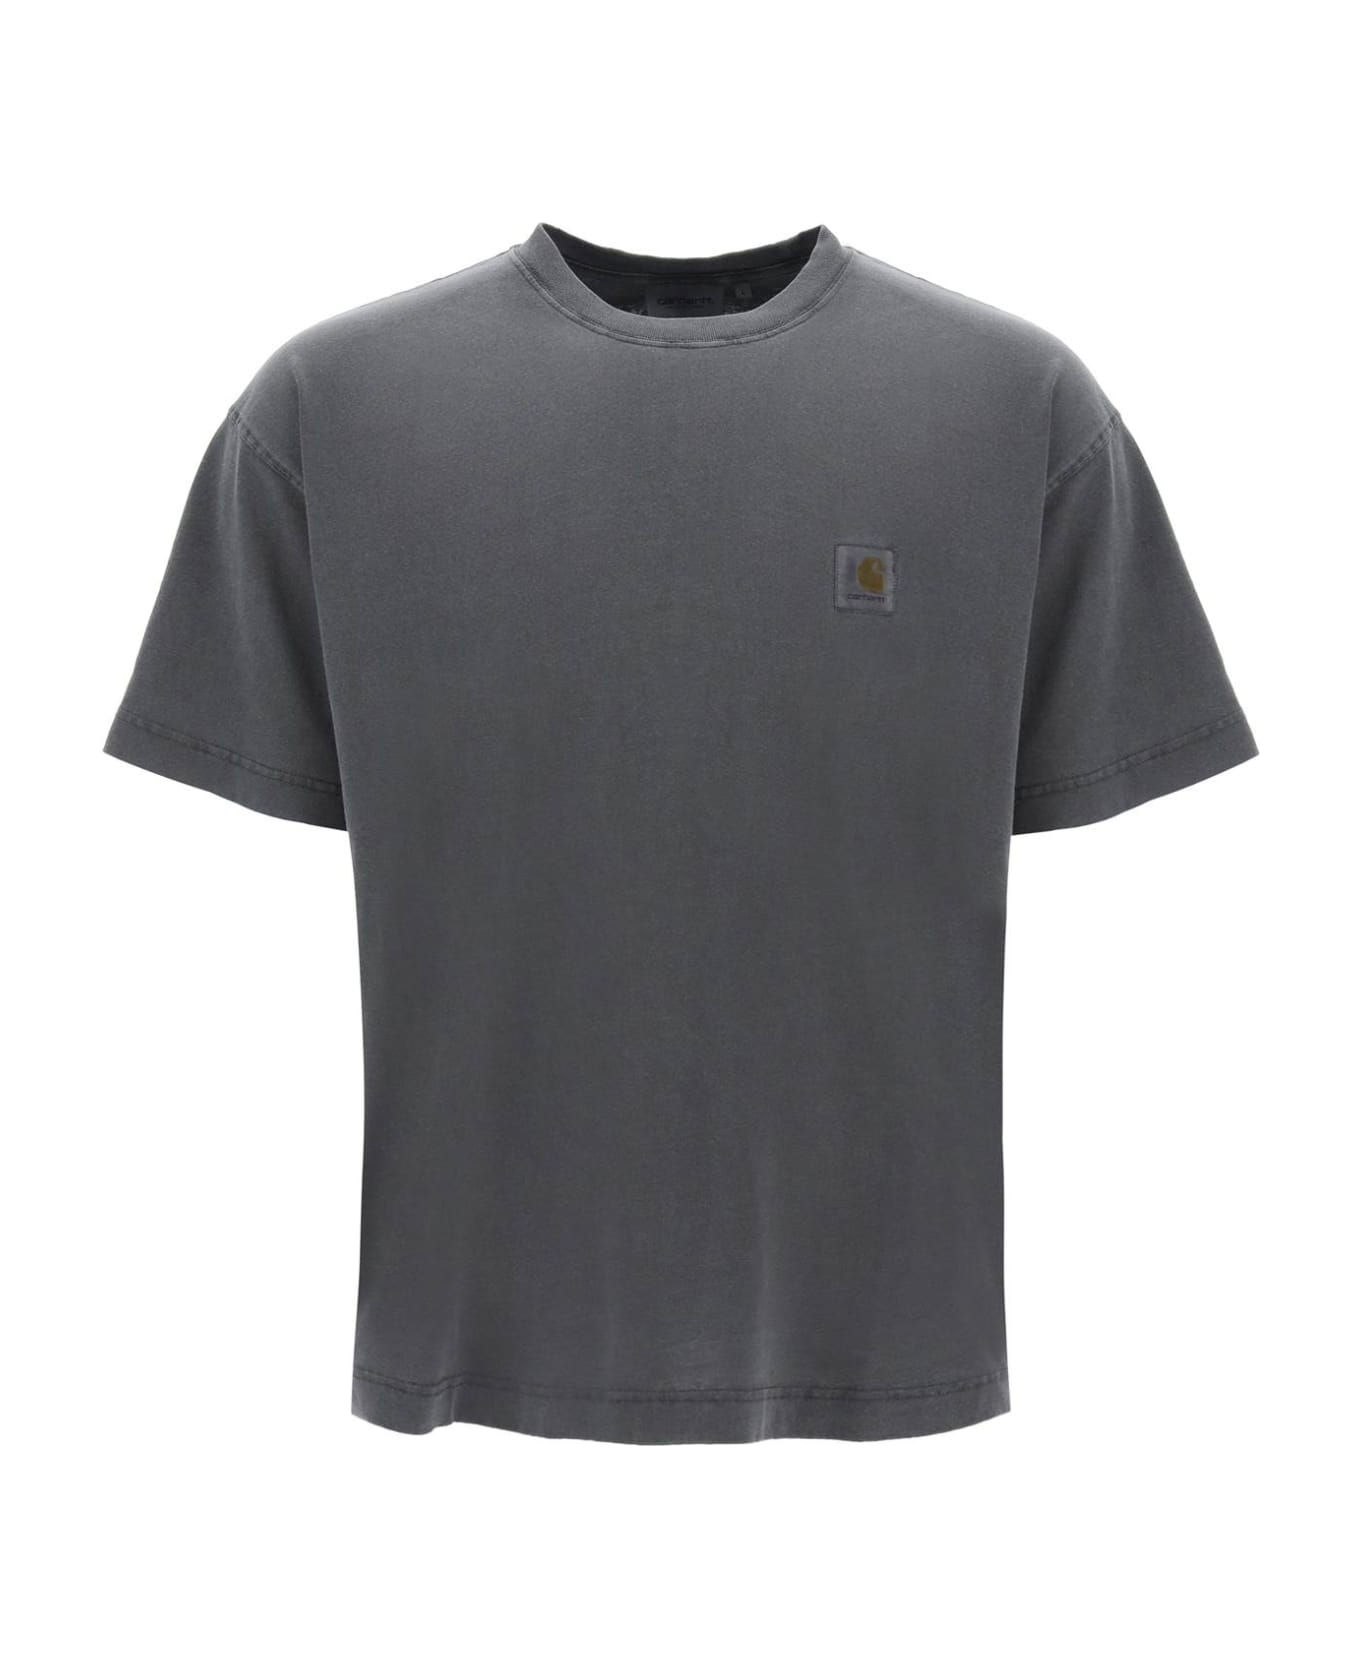 Carhartt Nelson T-shirt - Gd Chacoal Garment Dyed